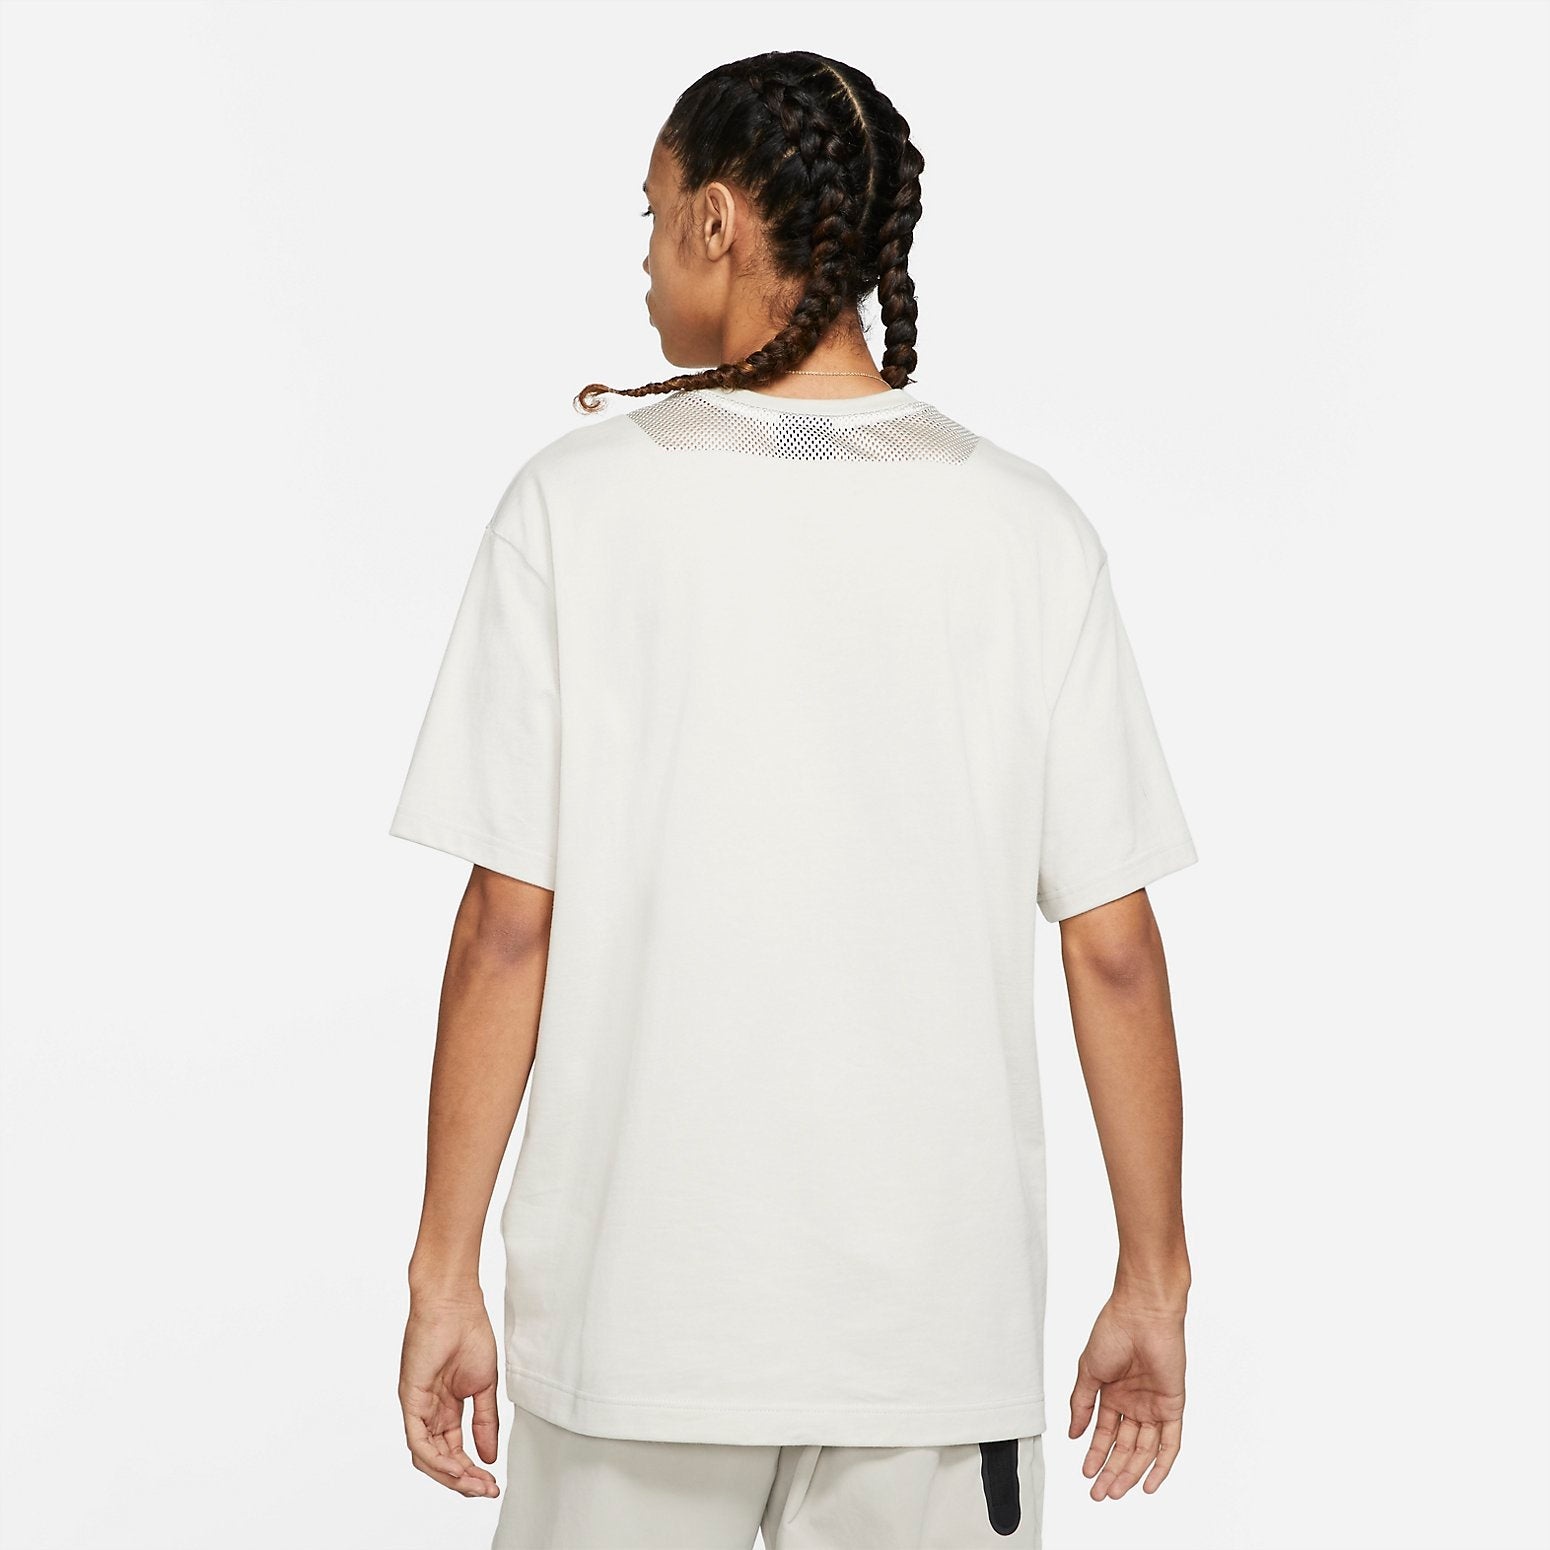 Nike Short-Sleeve Pocket T-Shirt 'White' DA0510-072 - 2